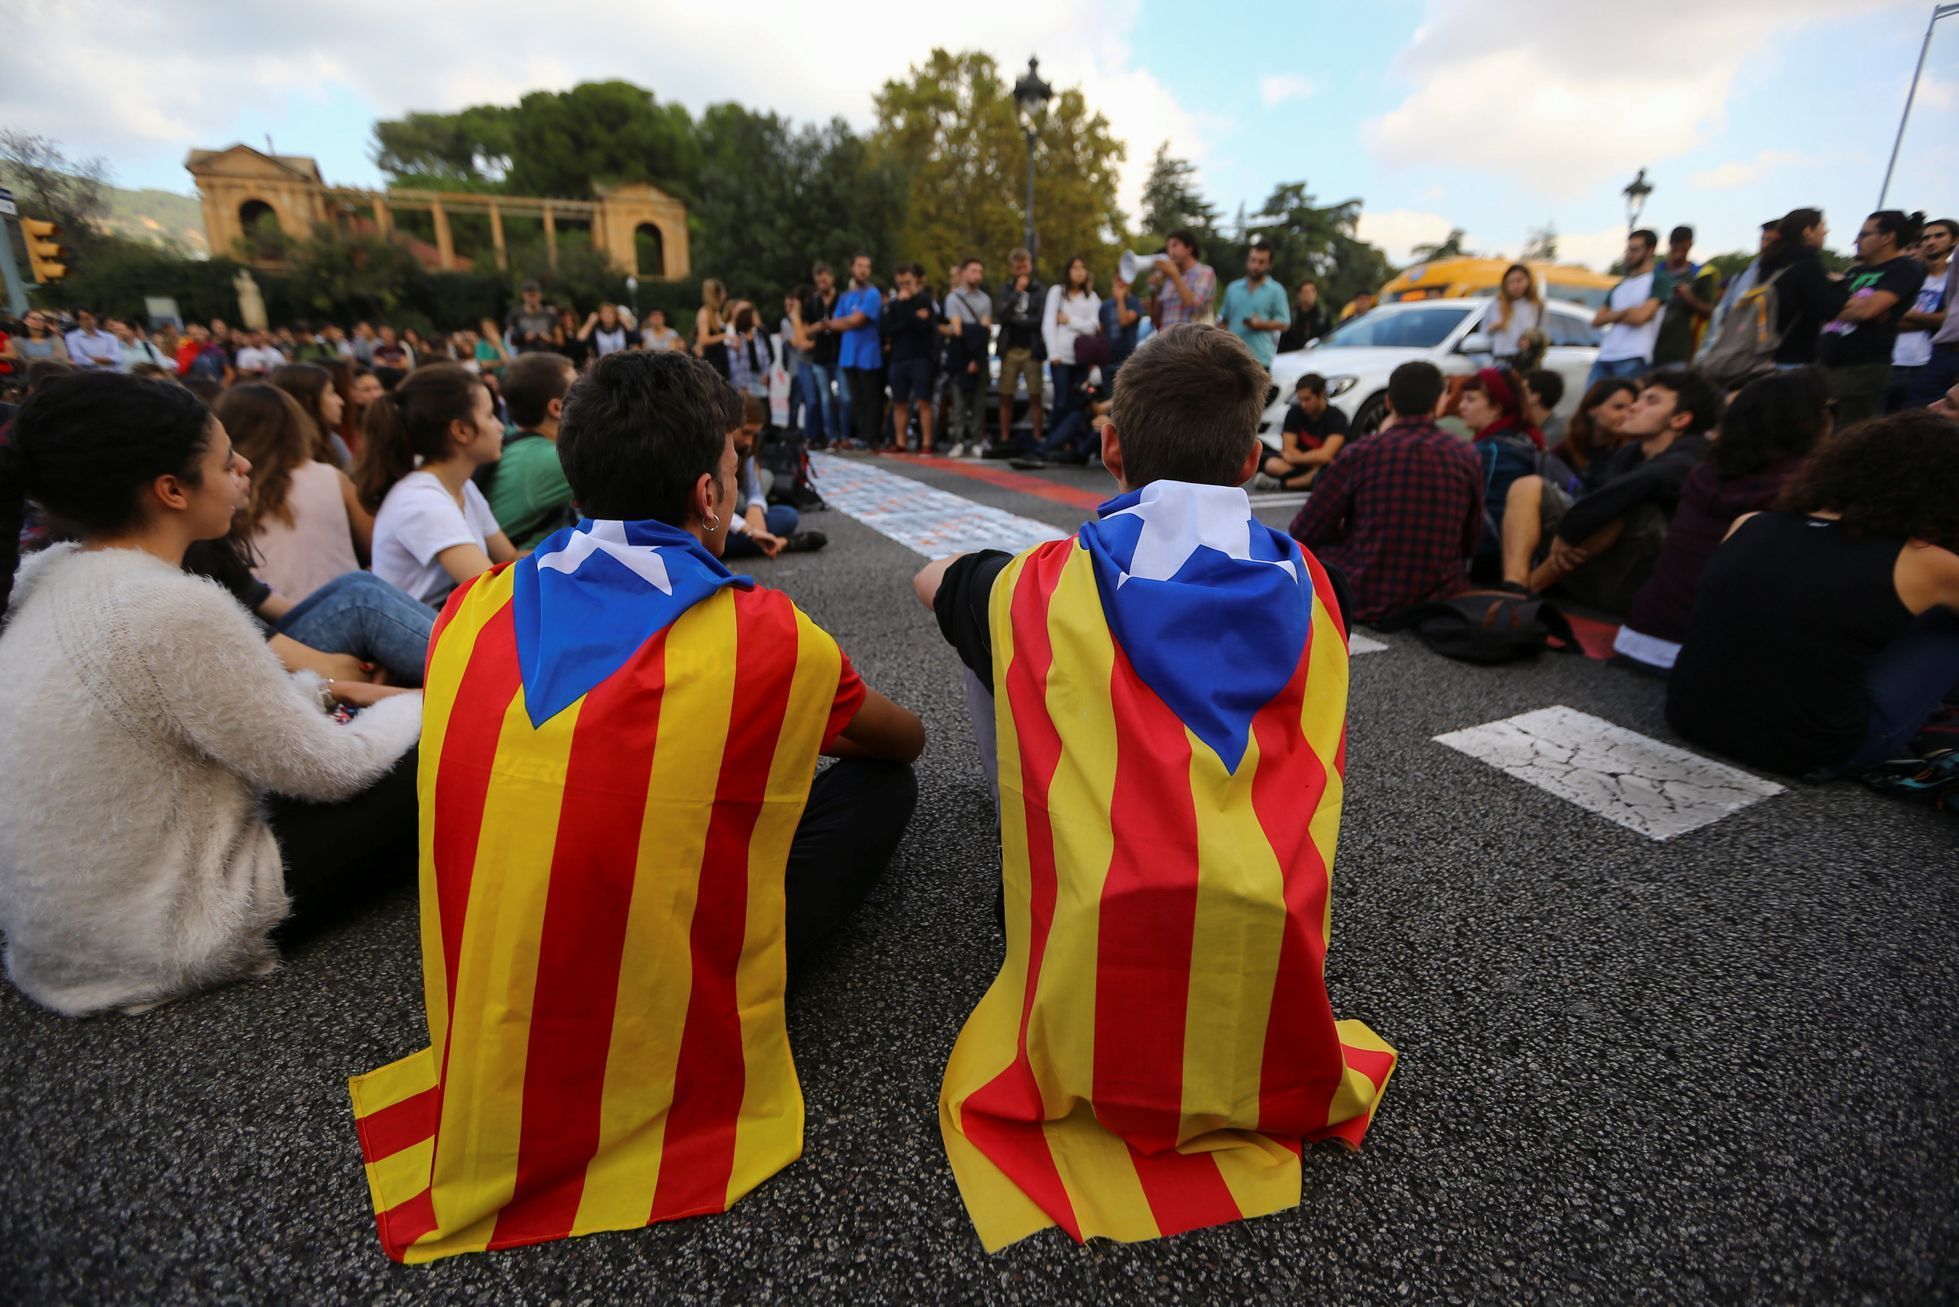 Katalánští studenti protestují proti zatčení vůdců katalánských separatistů.